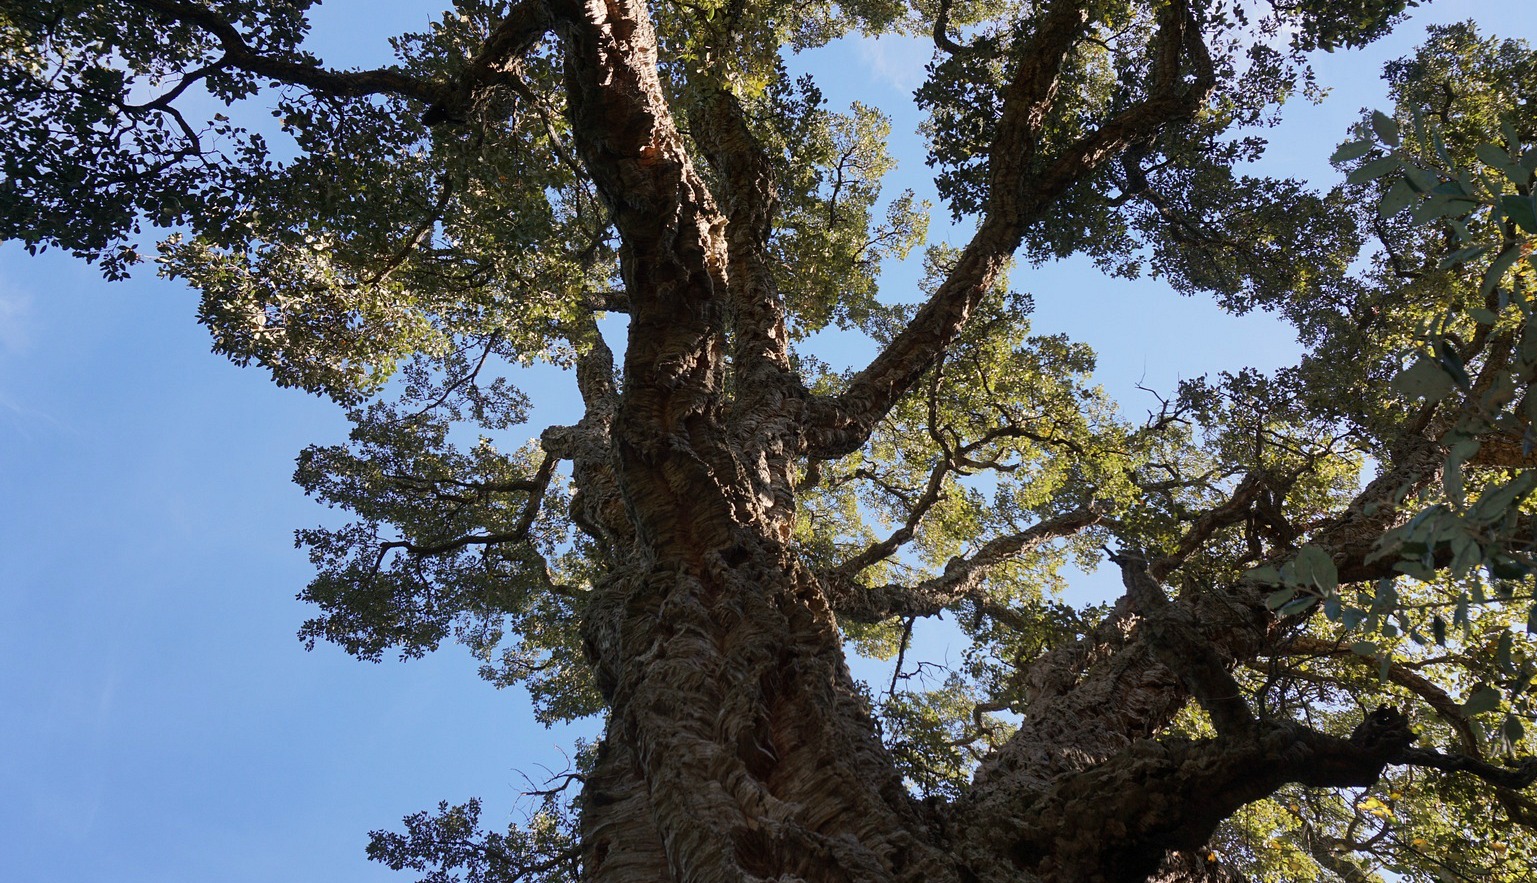 300-year oak tree in Domaine du Rayol